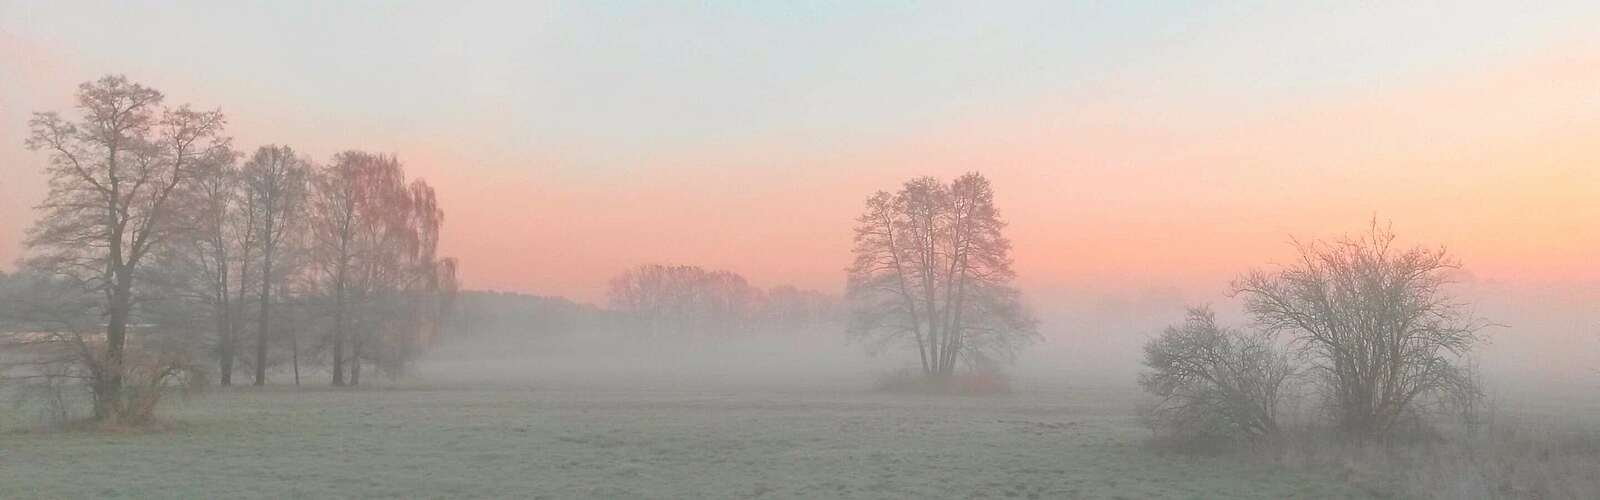 Bunter Himmel und Nebel bei Beelitz,
        
    

        Foto: Tourismusverband Fläming e.V./Fanny Raab